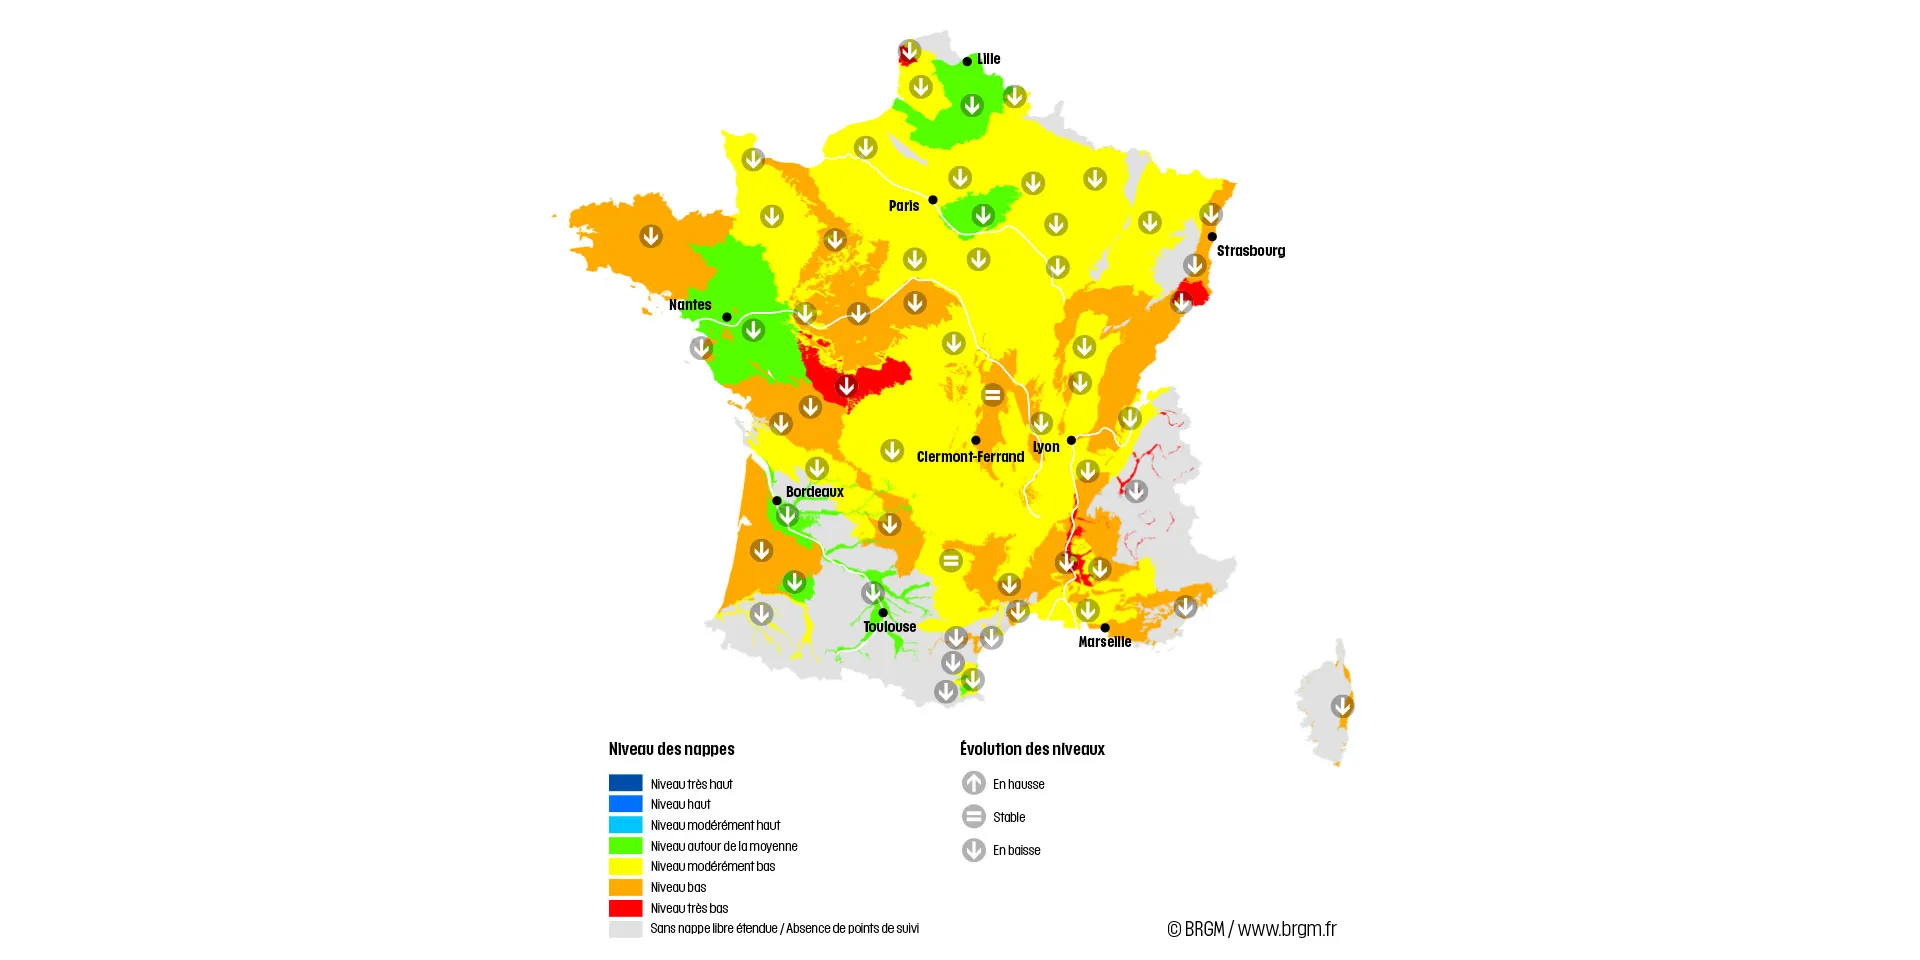 Carte de France de la situation des nappes au 1er juillet 2022.